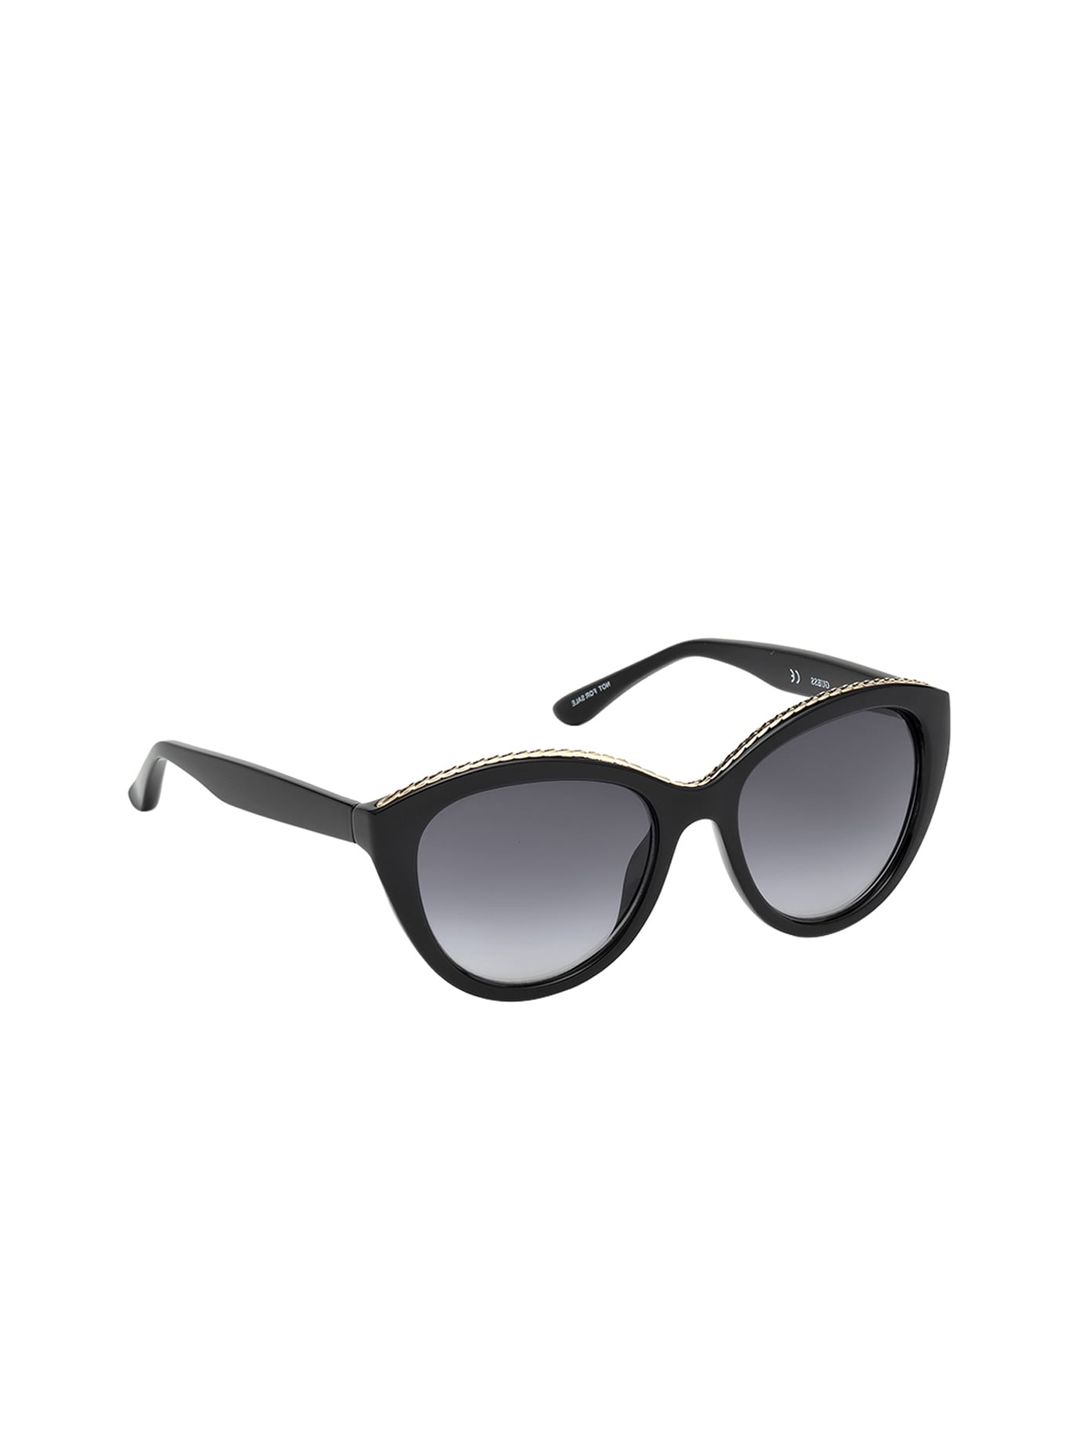 Guess Women Grey Cateye Sunglasses GU7505 54 05B Price in India